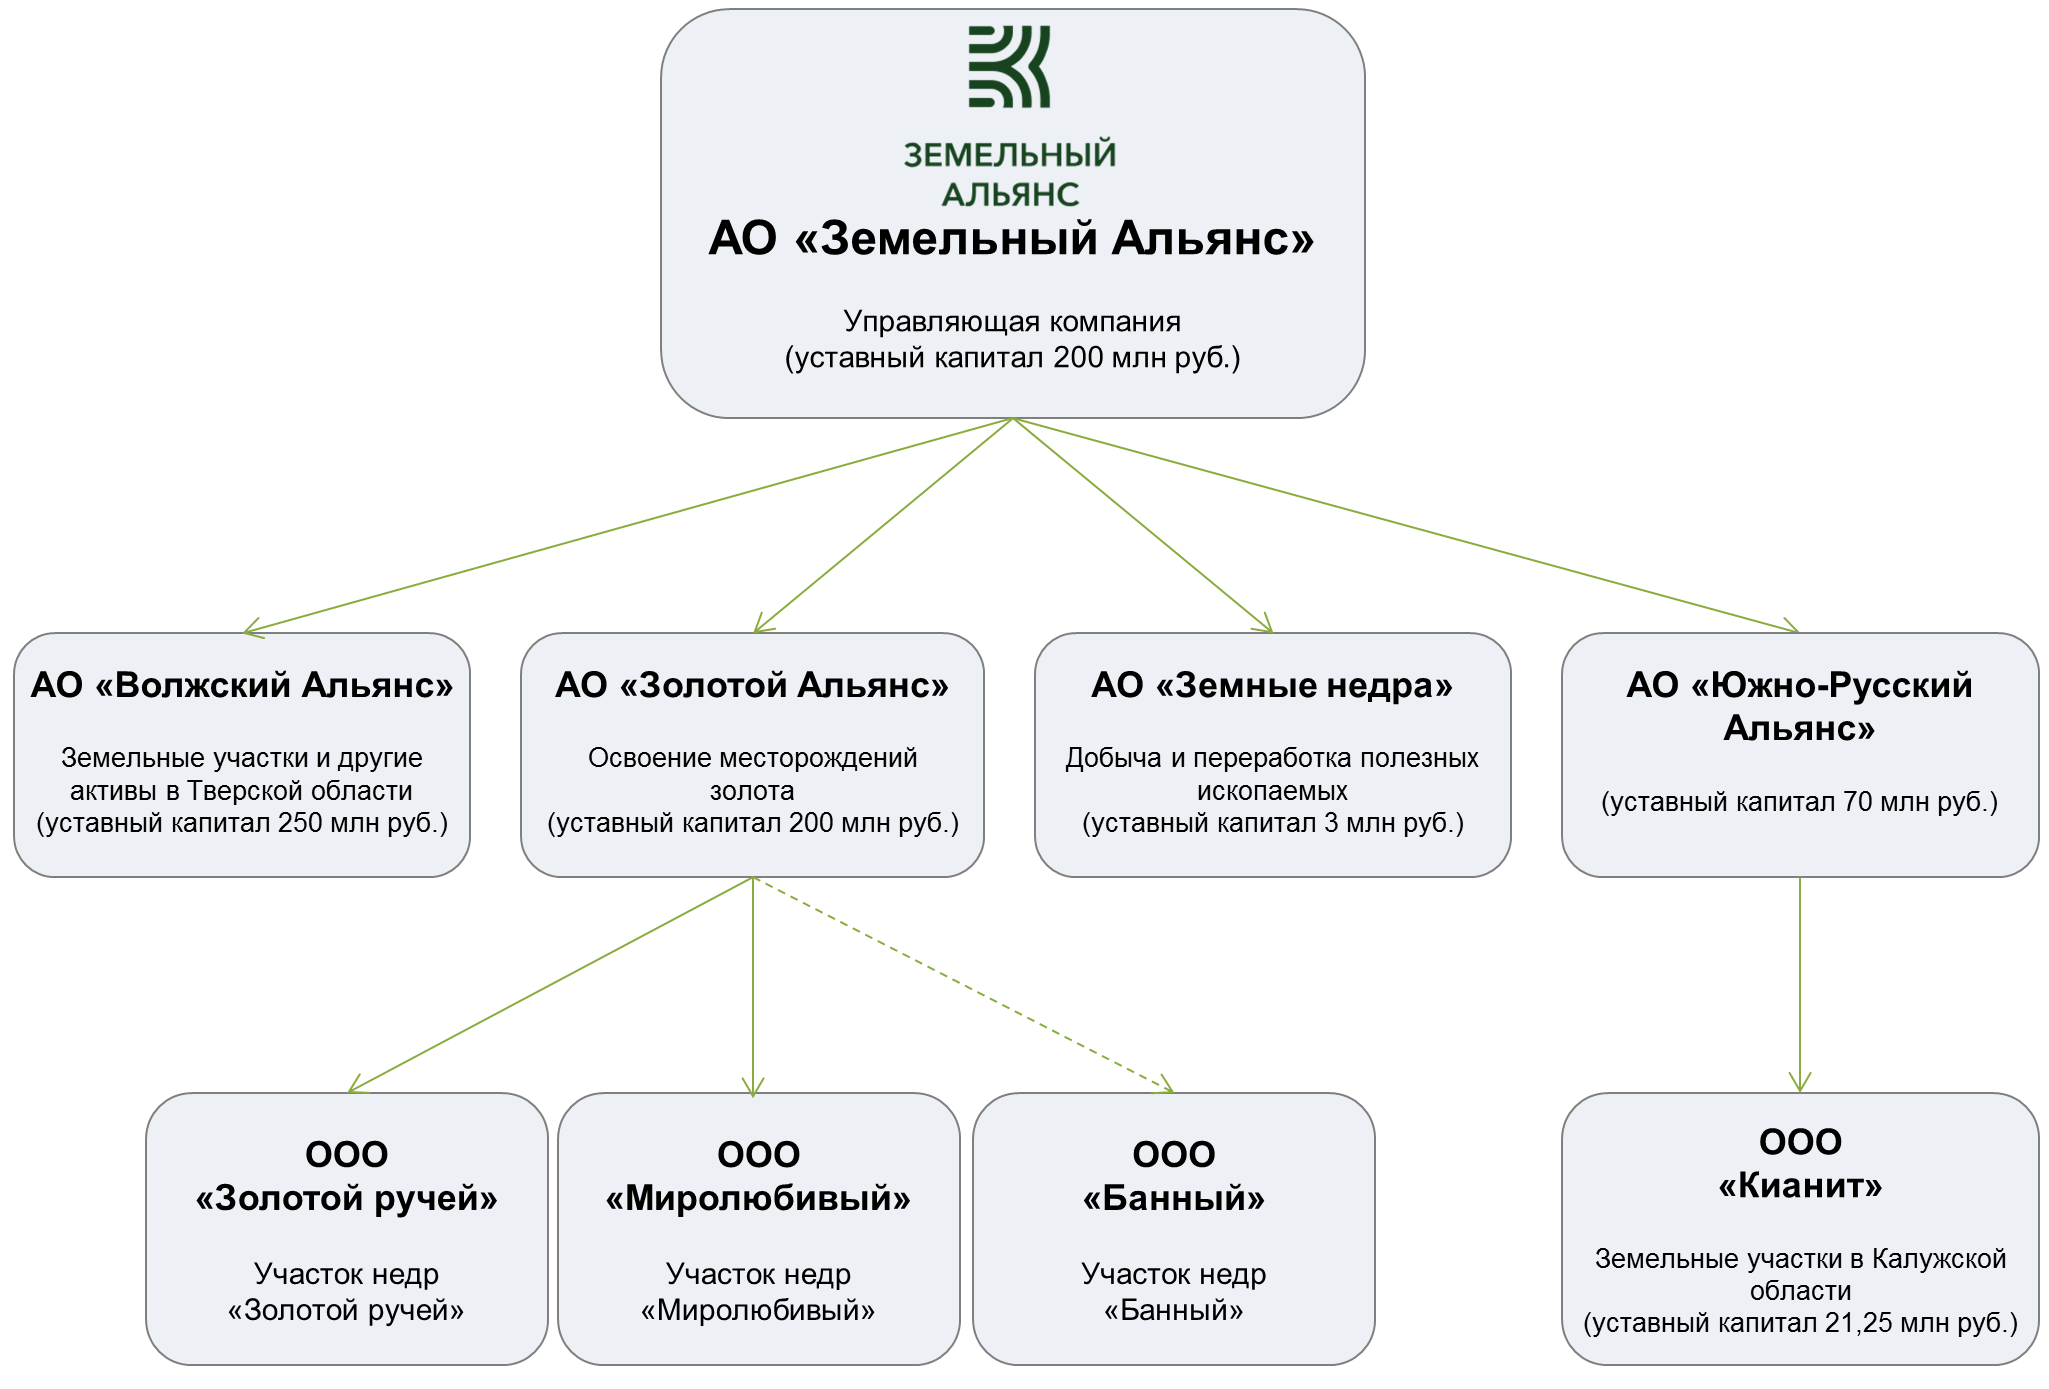 Корпоративная структура компании АО «Земельный Альянс»